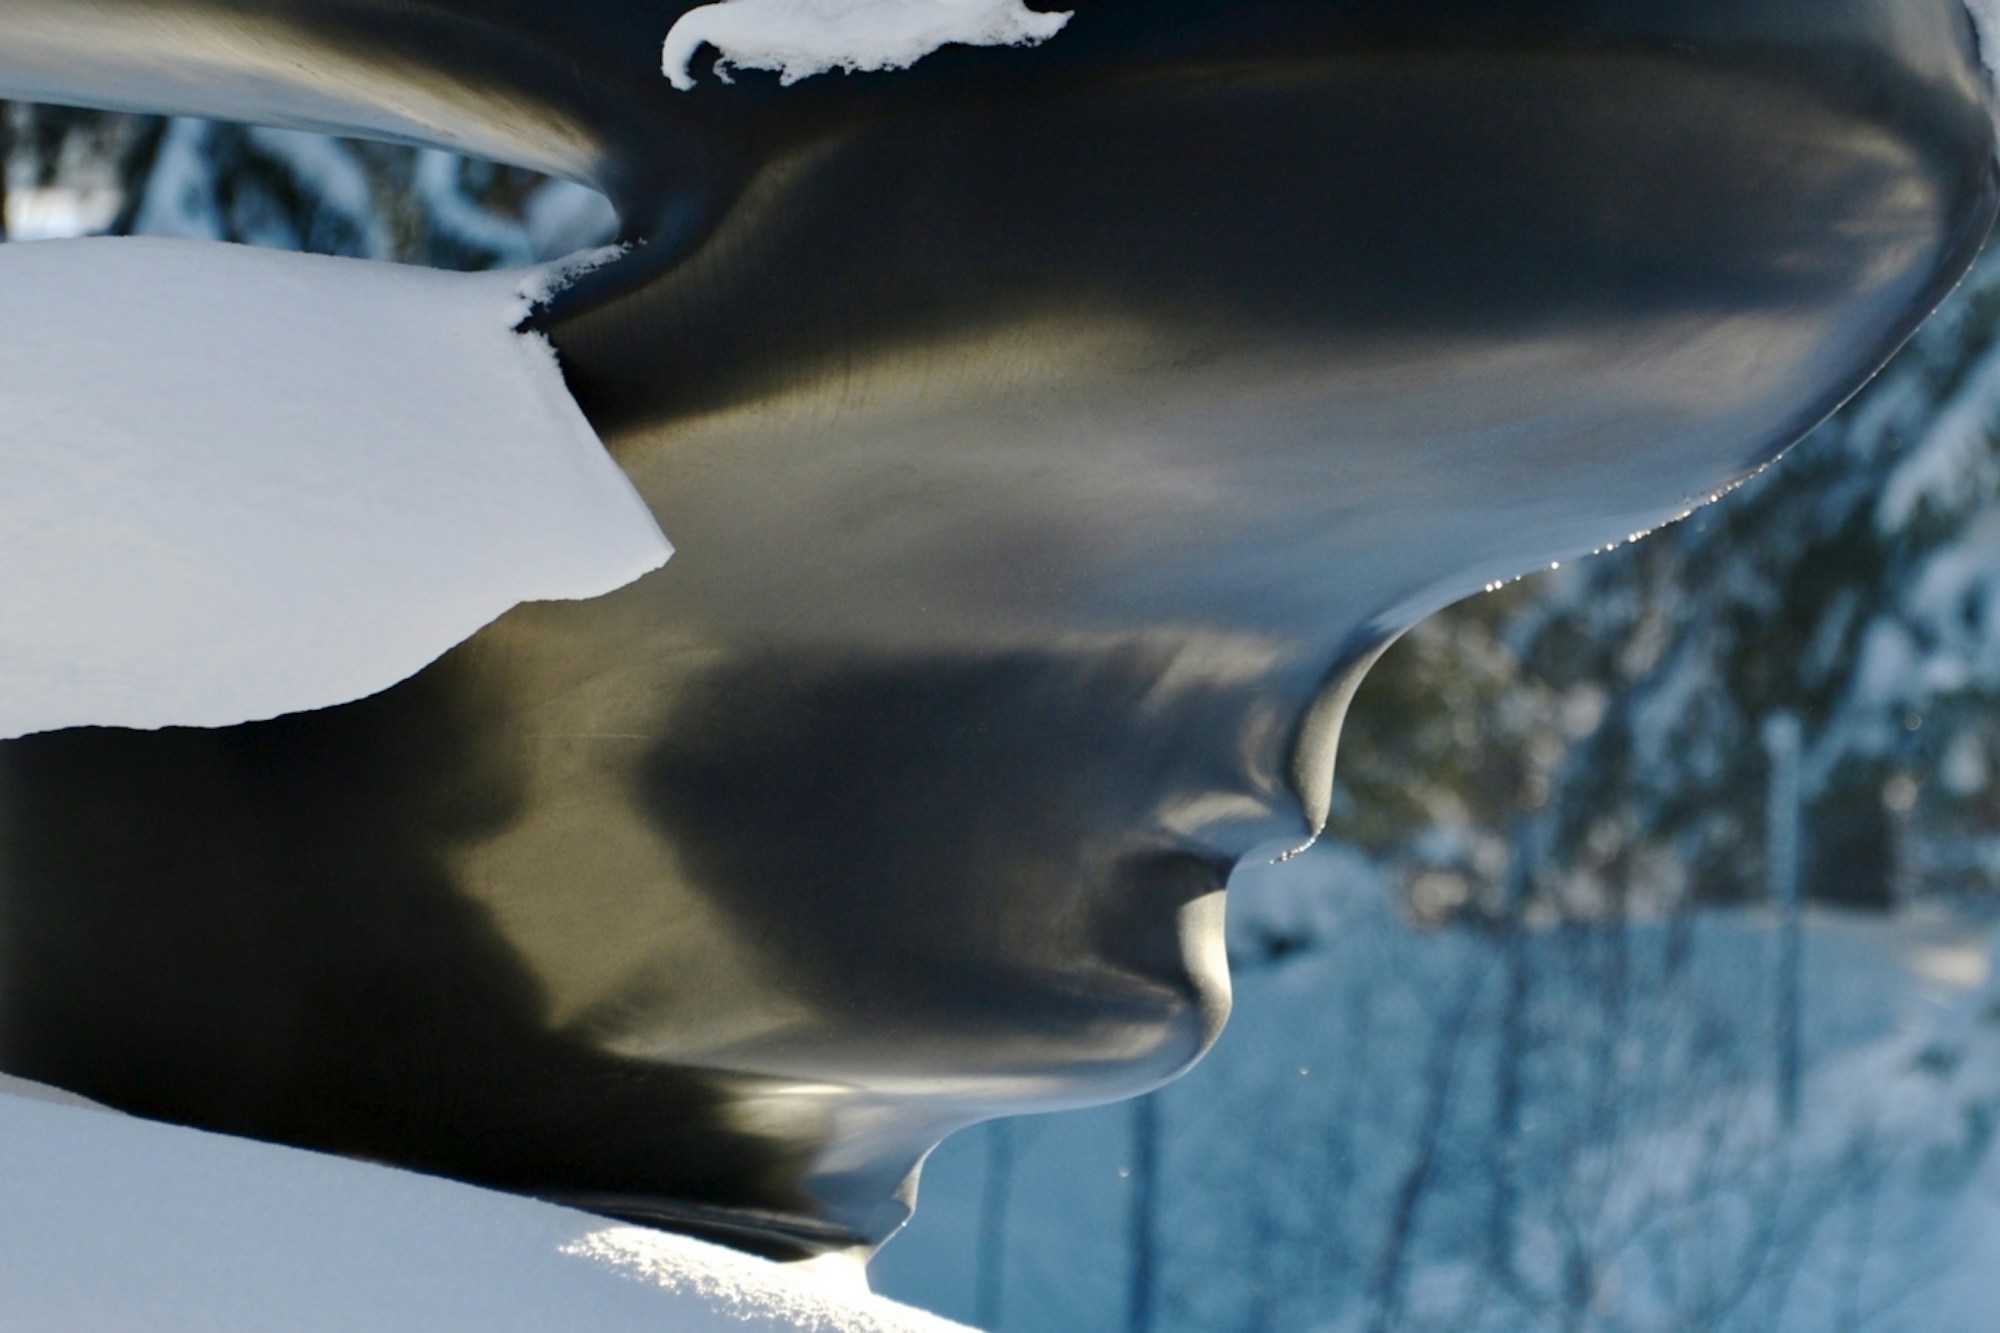 Detaljbilde av skulpturen Bent of Mind av Tony Cragg. Skulpturen er svart og den hvite snøen fungerer som en sterk kontrast.